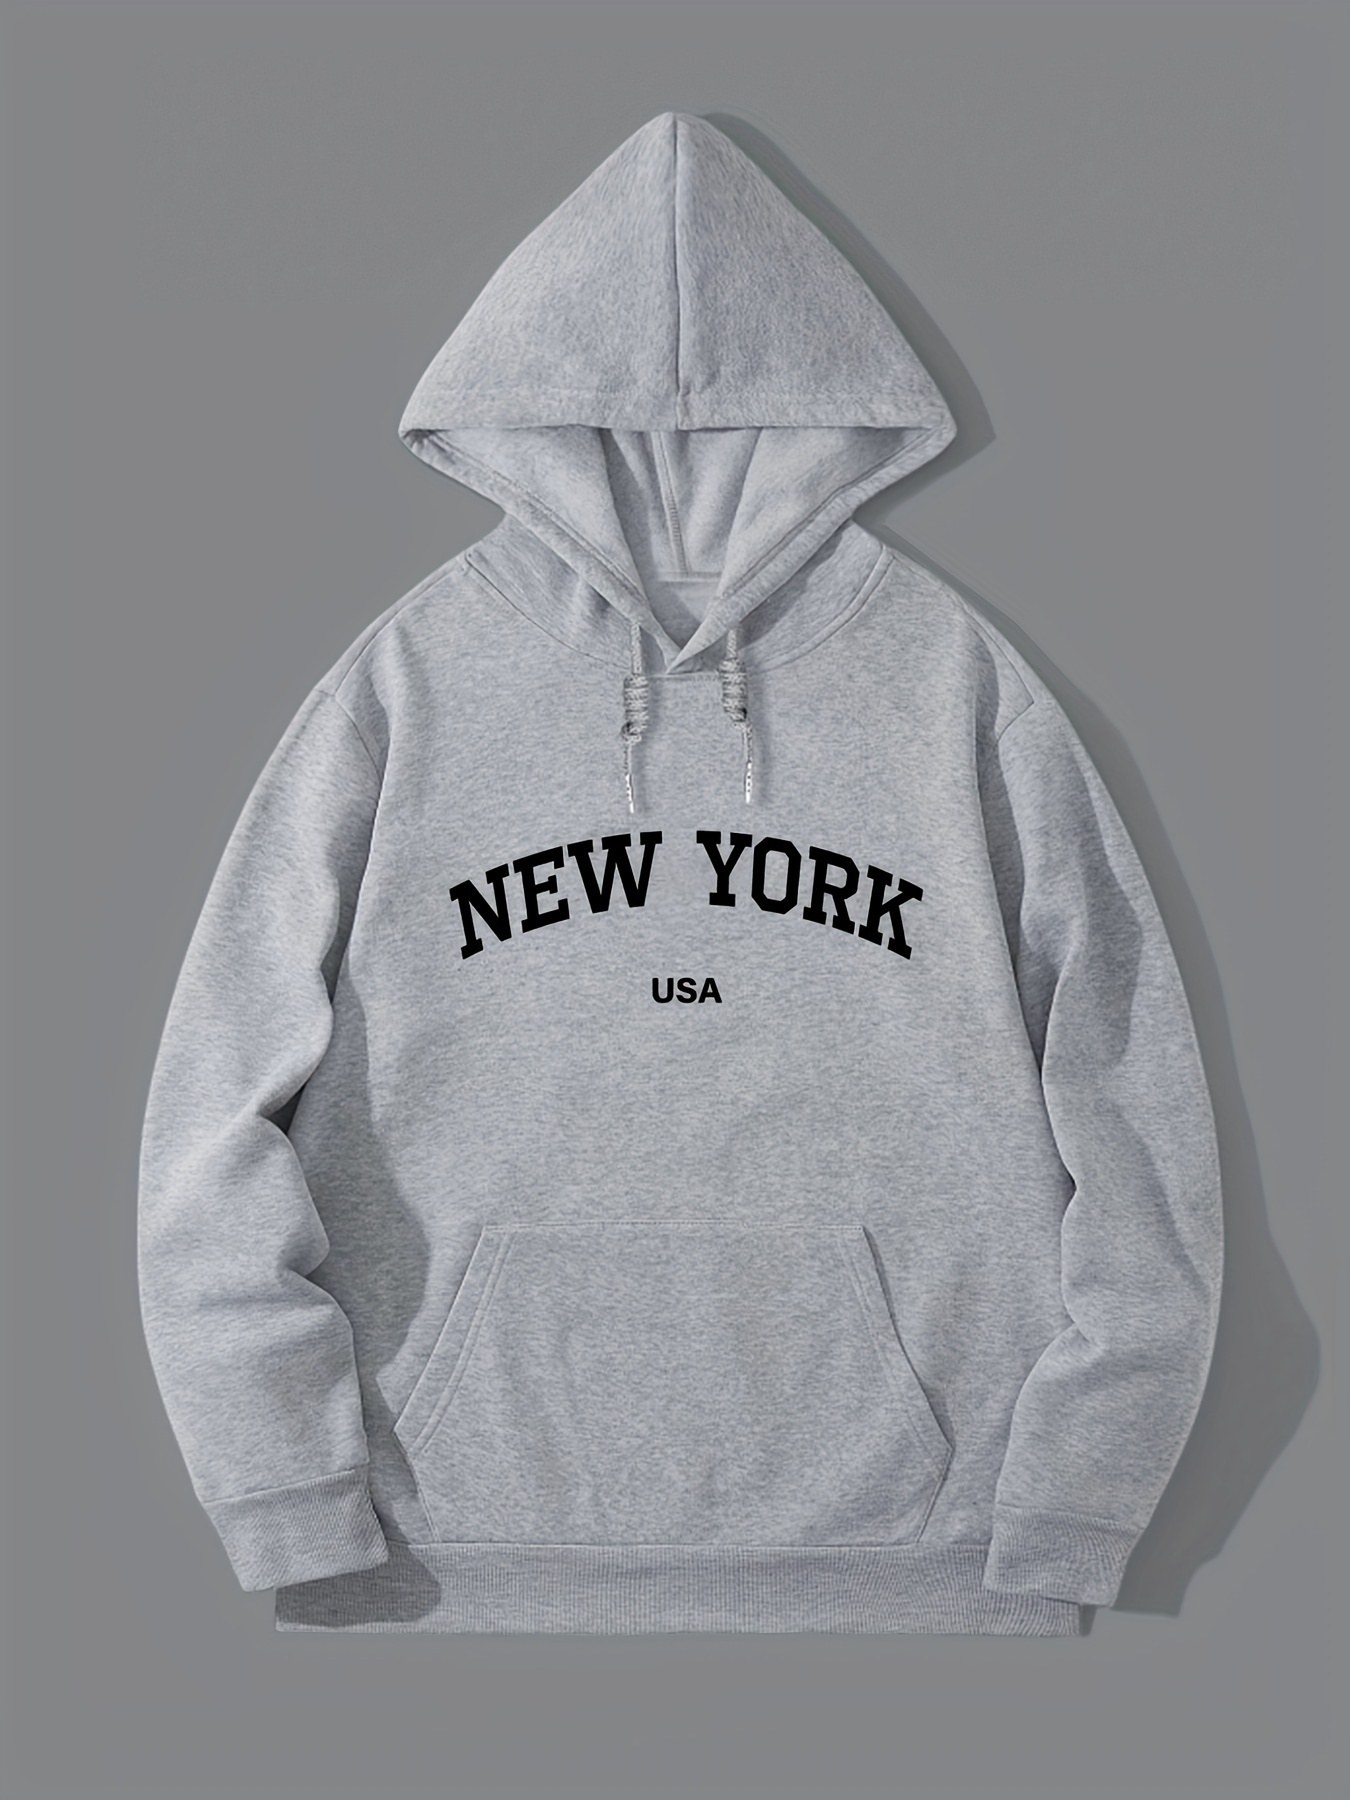 New York Hoodie for Men Women Hooded Sweatshirt Casual Hoodies